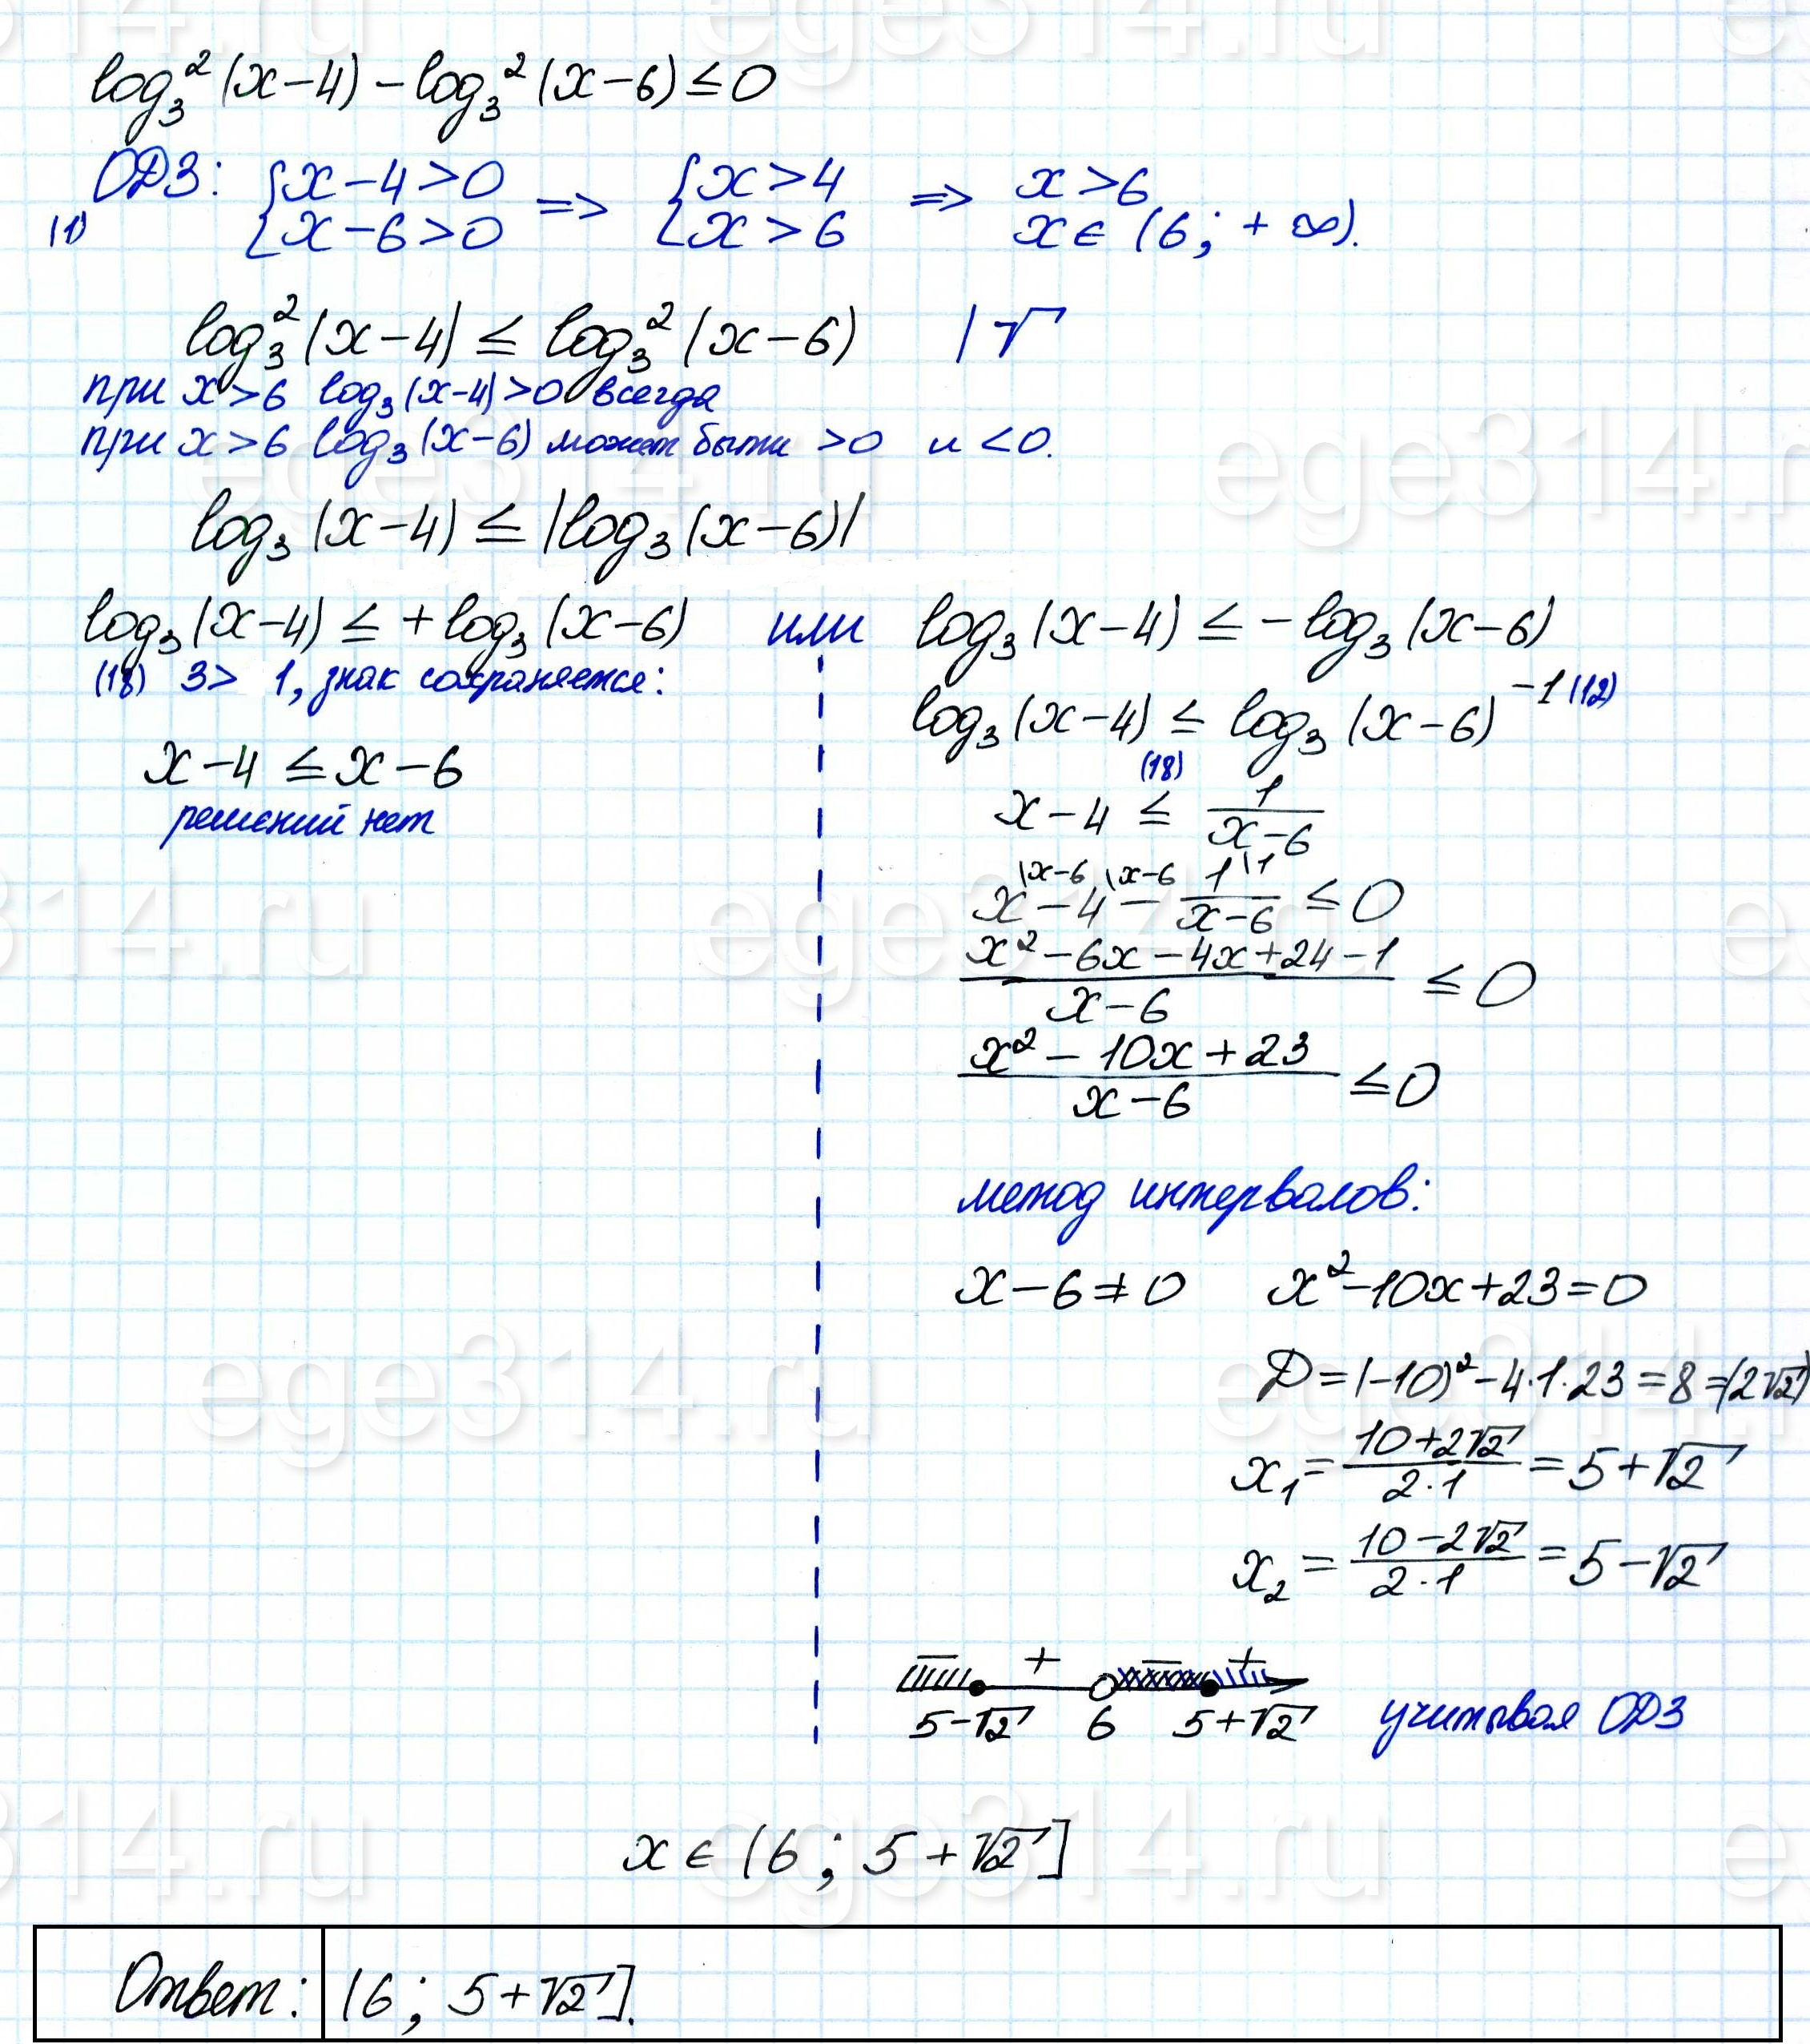 Решите неравенство (log3 (x-4))^2-(log3 (x-6))^2 <= 0.